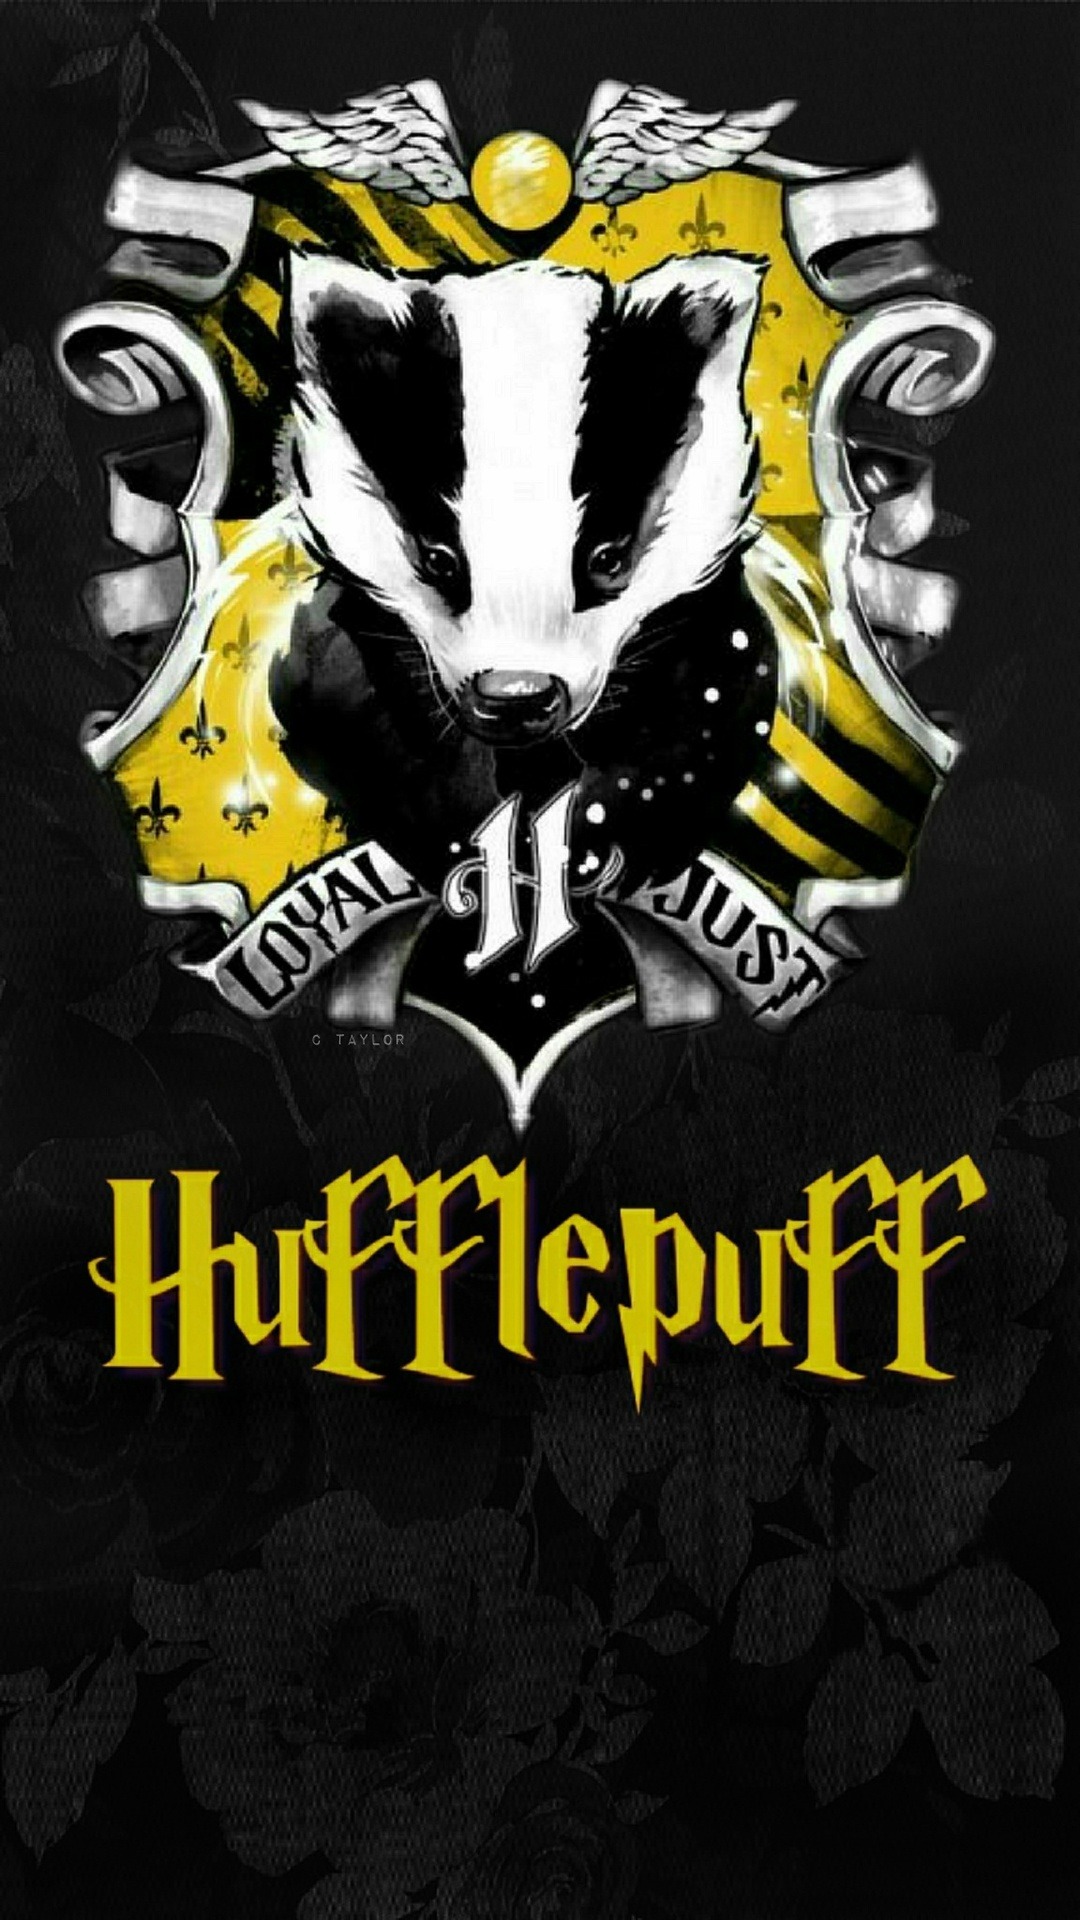 Hufflepuff Crest Wallpapers